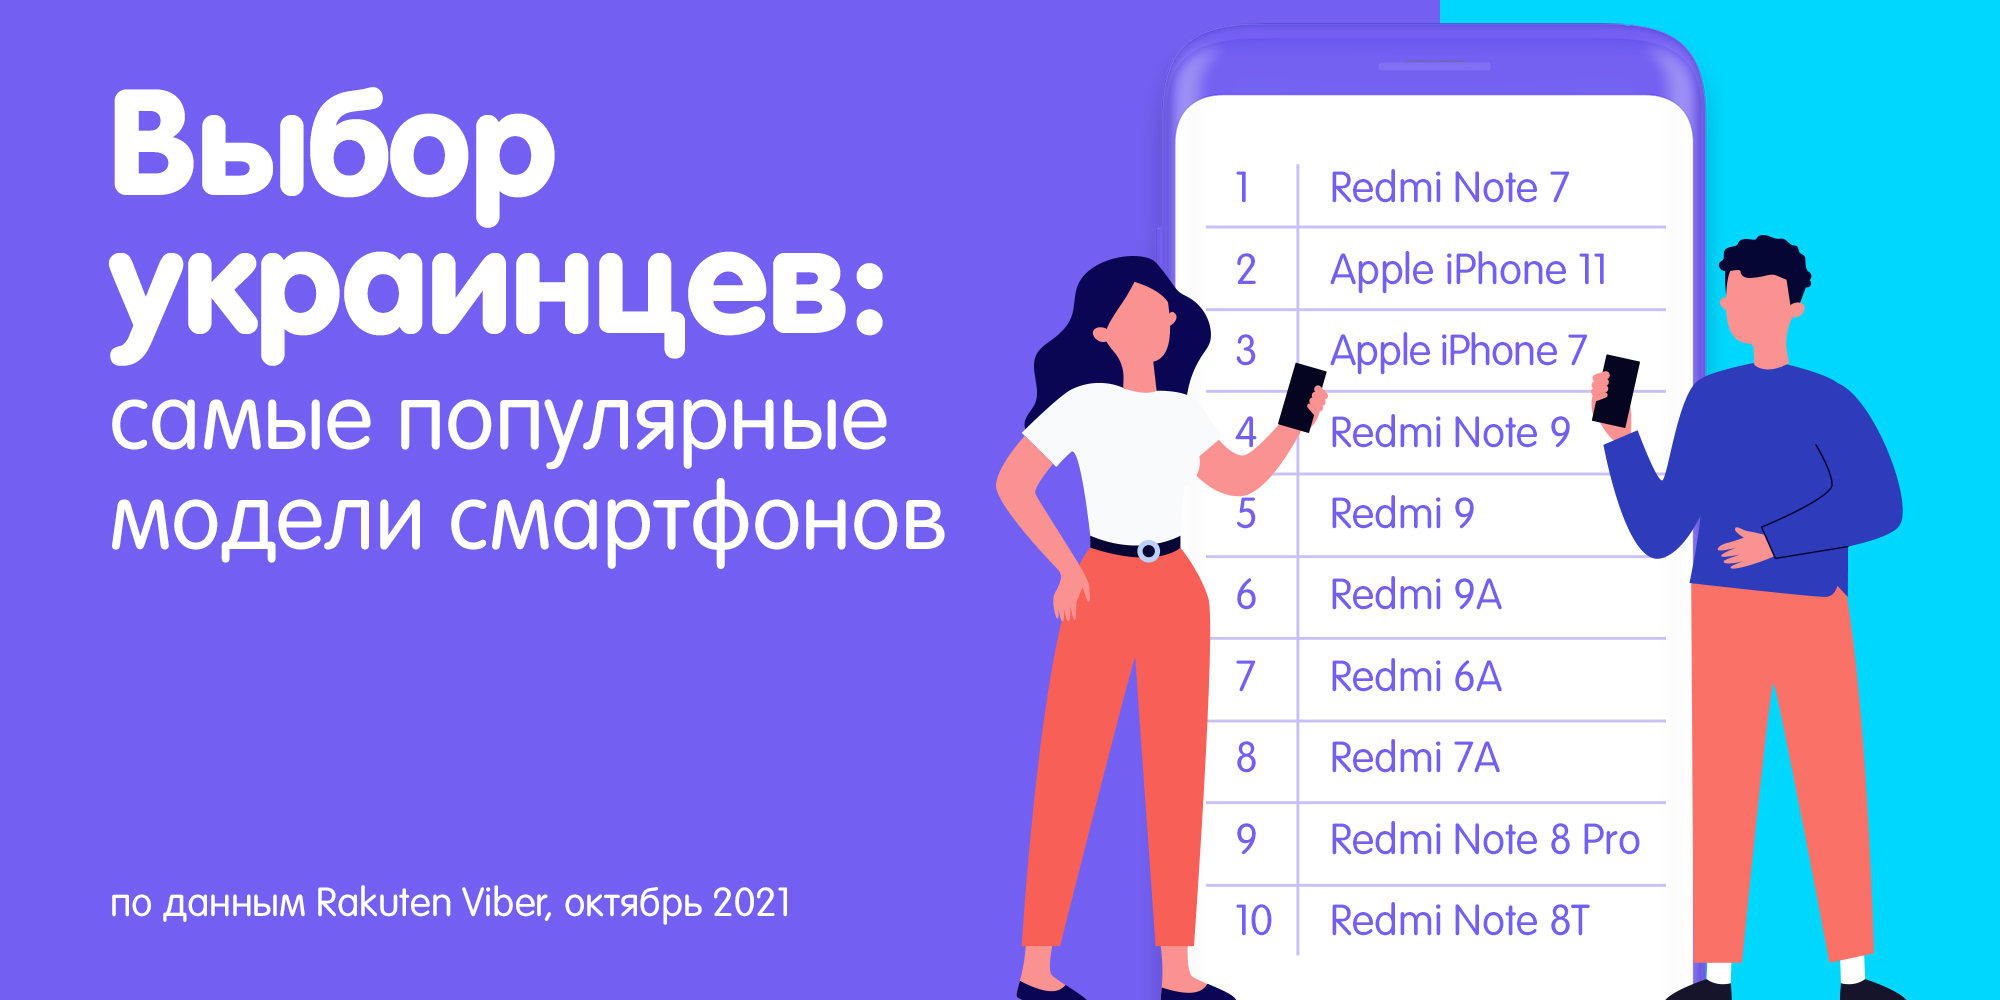 Названы смартфоны, которыми предпочитают пользоваться украинские завсегдатаи Viber